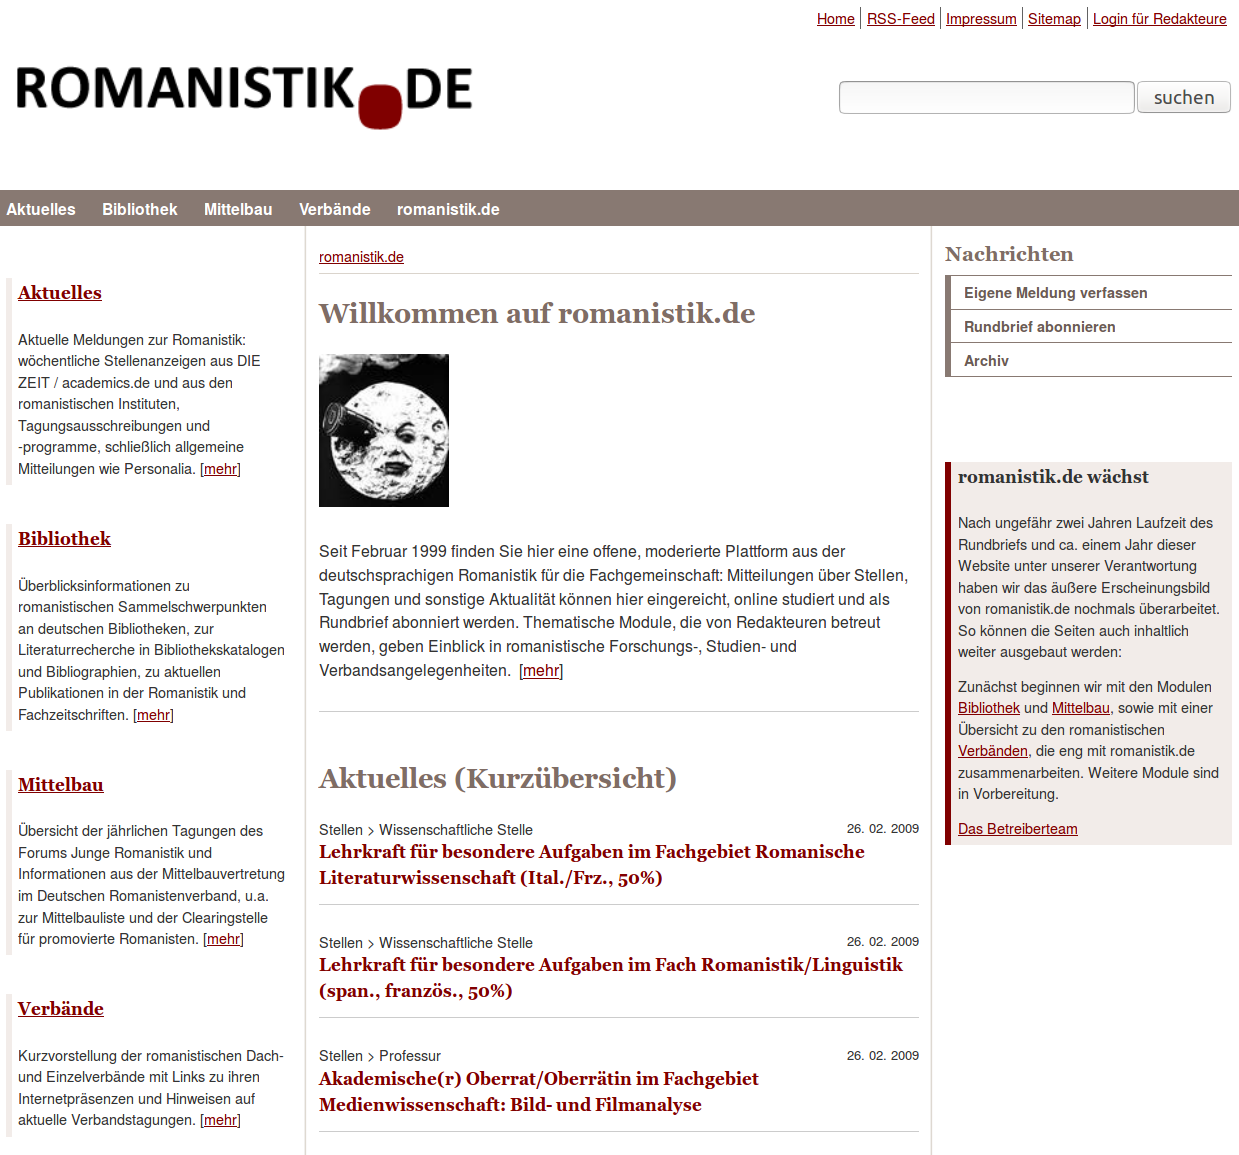 romanistik.de im Jahre 2009. Quelle: Internet Archive, URL: https://web.archive.org/web/20090228110847/http://www.romanistik.de/